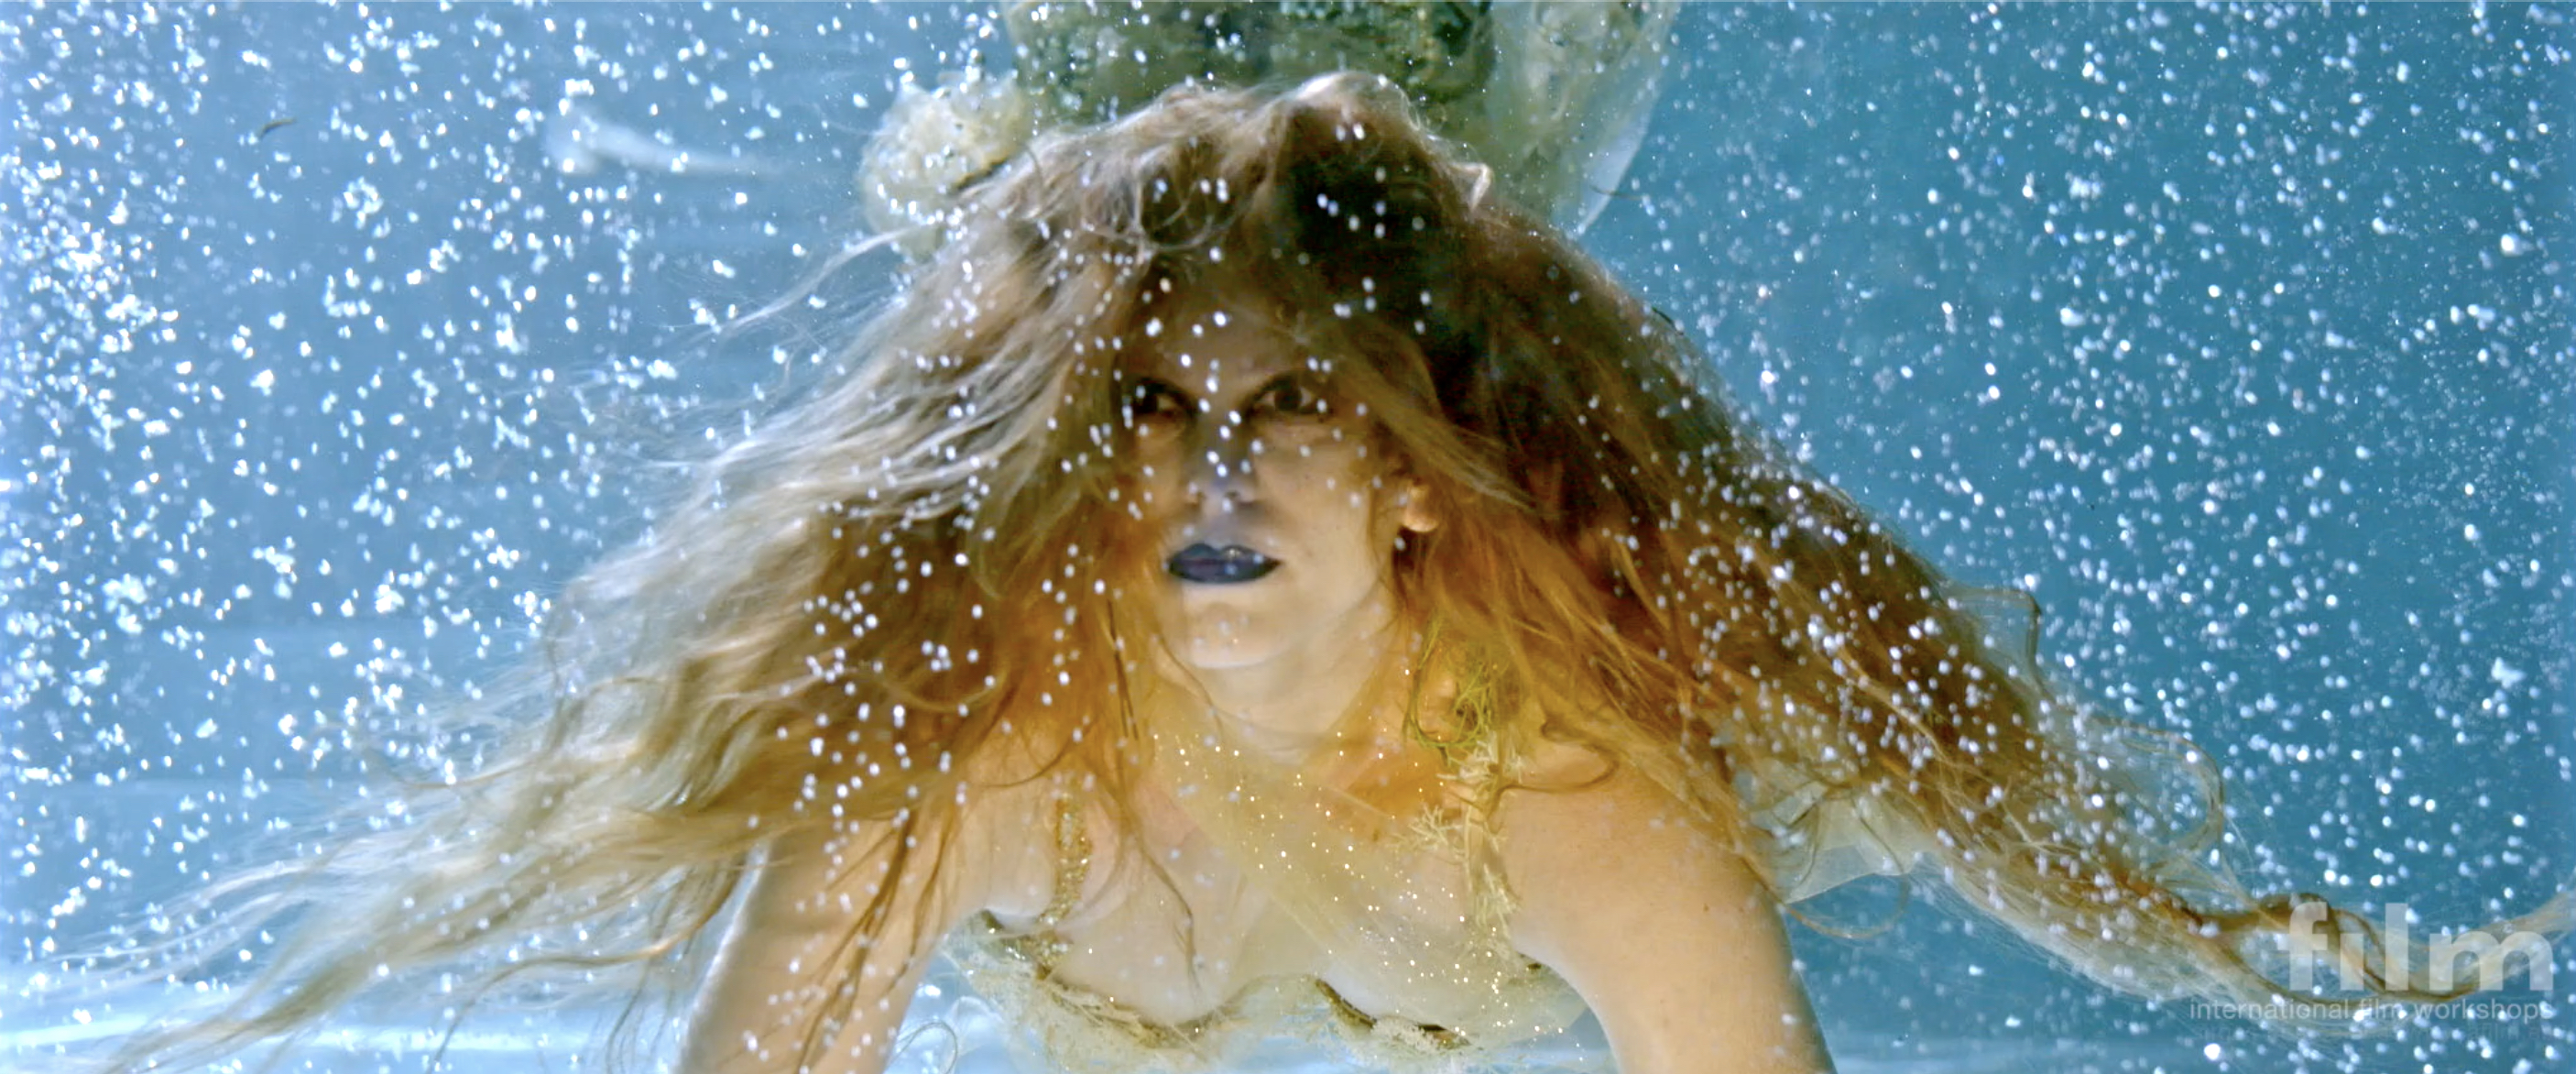 afilm feature film Awakening: A Mermaid's Tale starring Sanna Toivanen